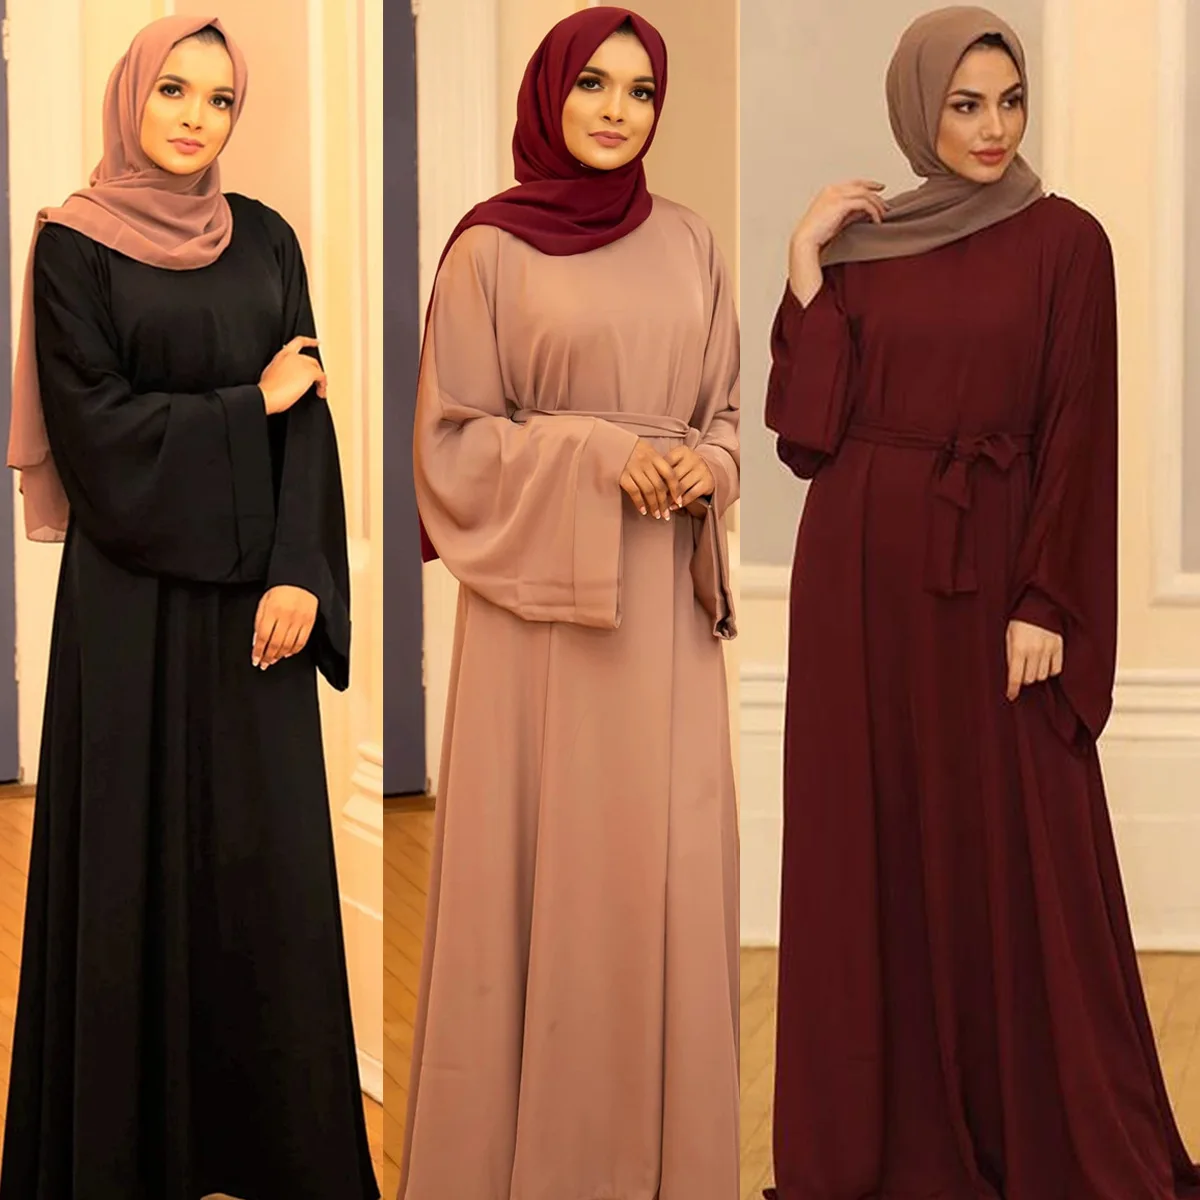 "Женская одежда с поясом, однотонная одежда в мусульманском стиле, абайя, африканские платья для мусульманских женщин, модные длинные платья..."